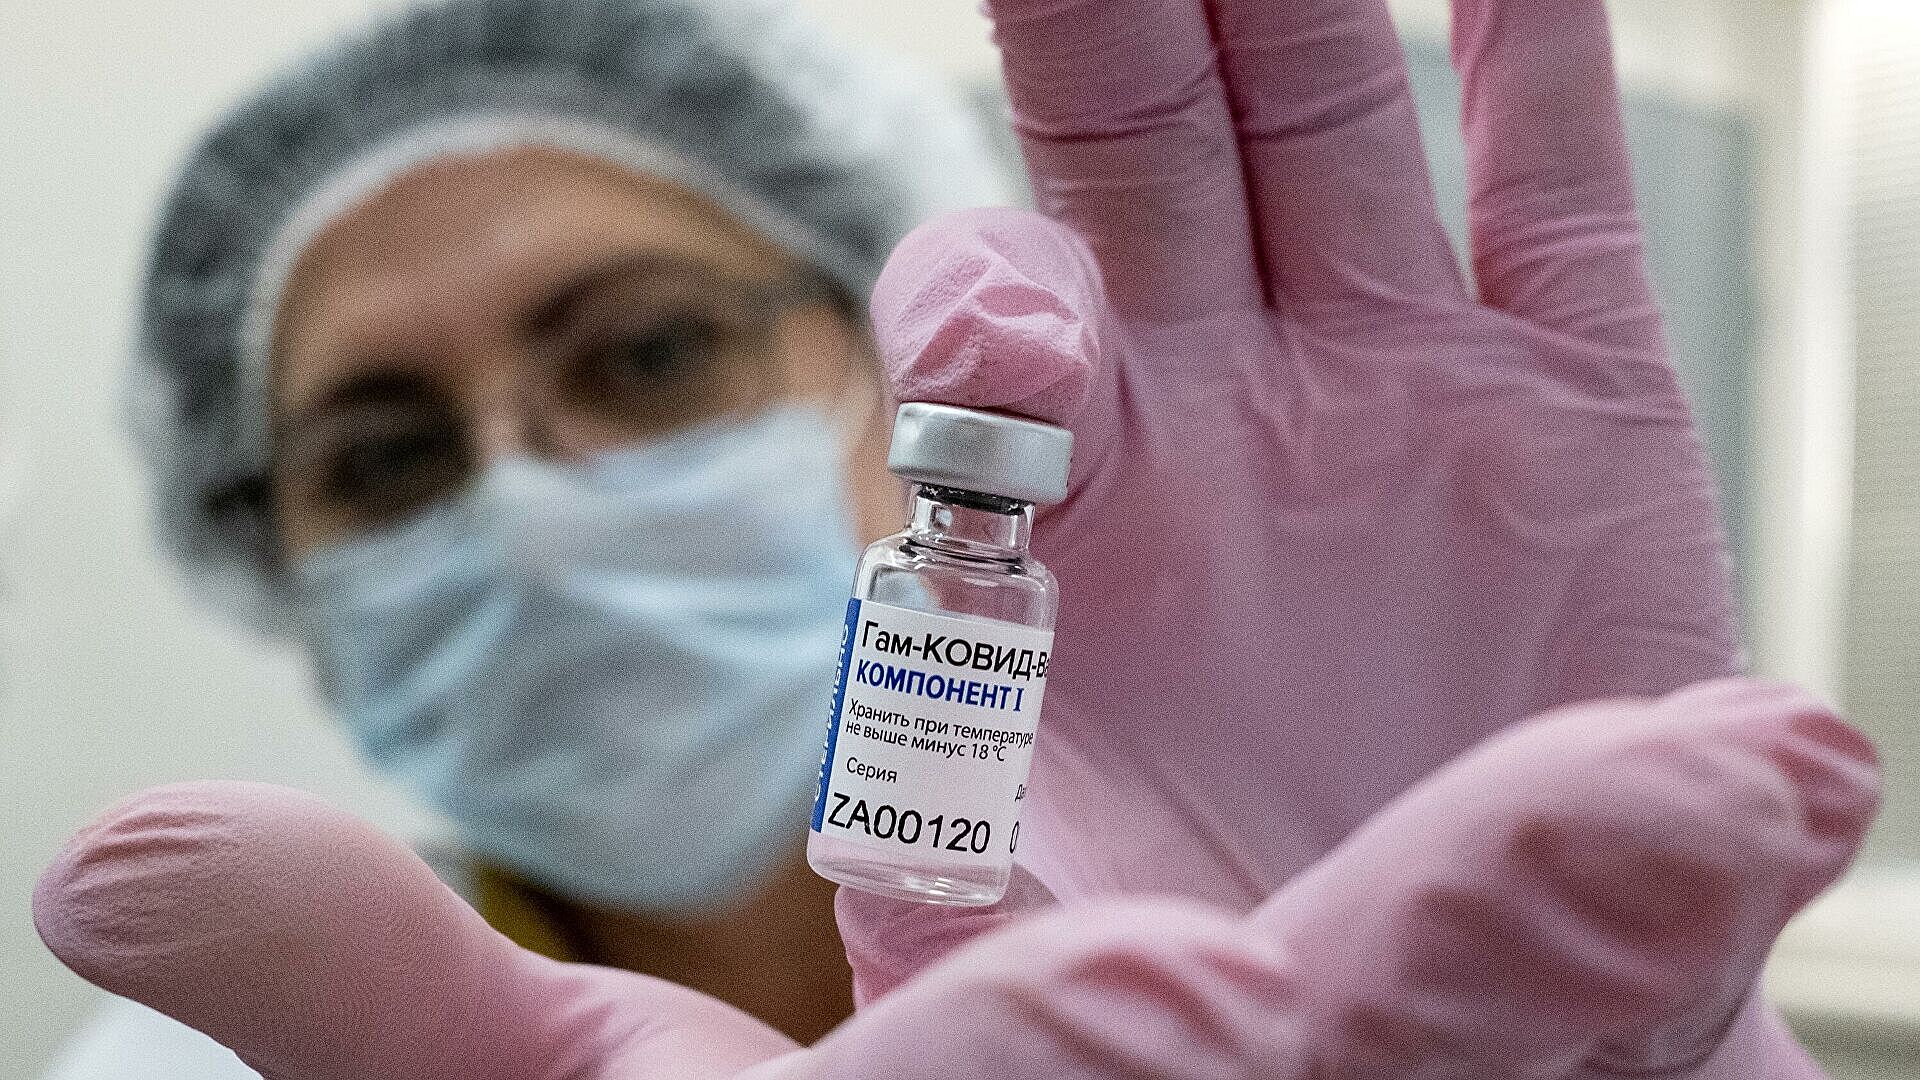 Аналитик Bloomberg назвал причины доверять российской вакцине "Спутник V"